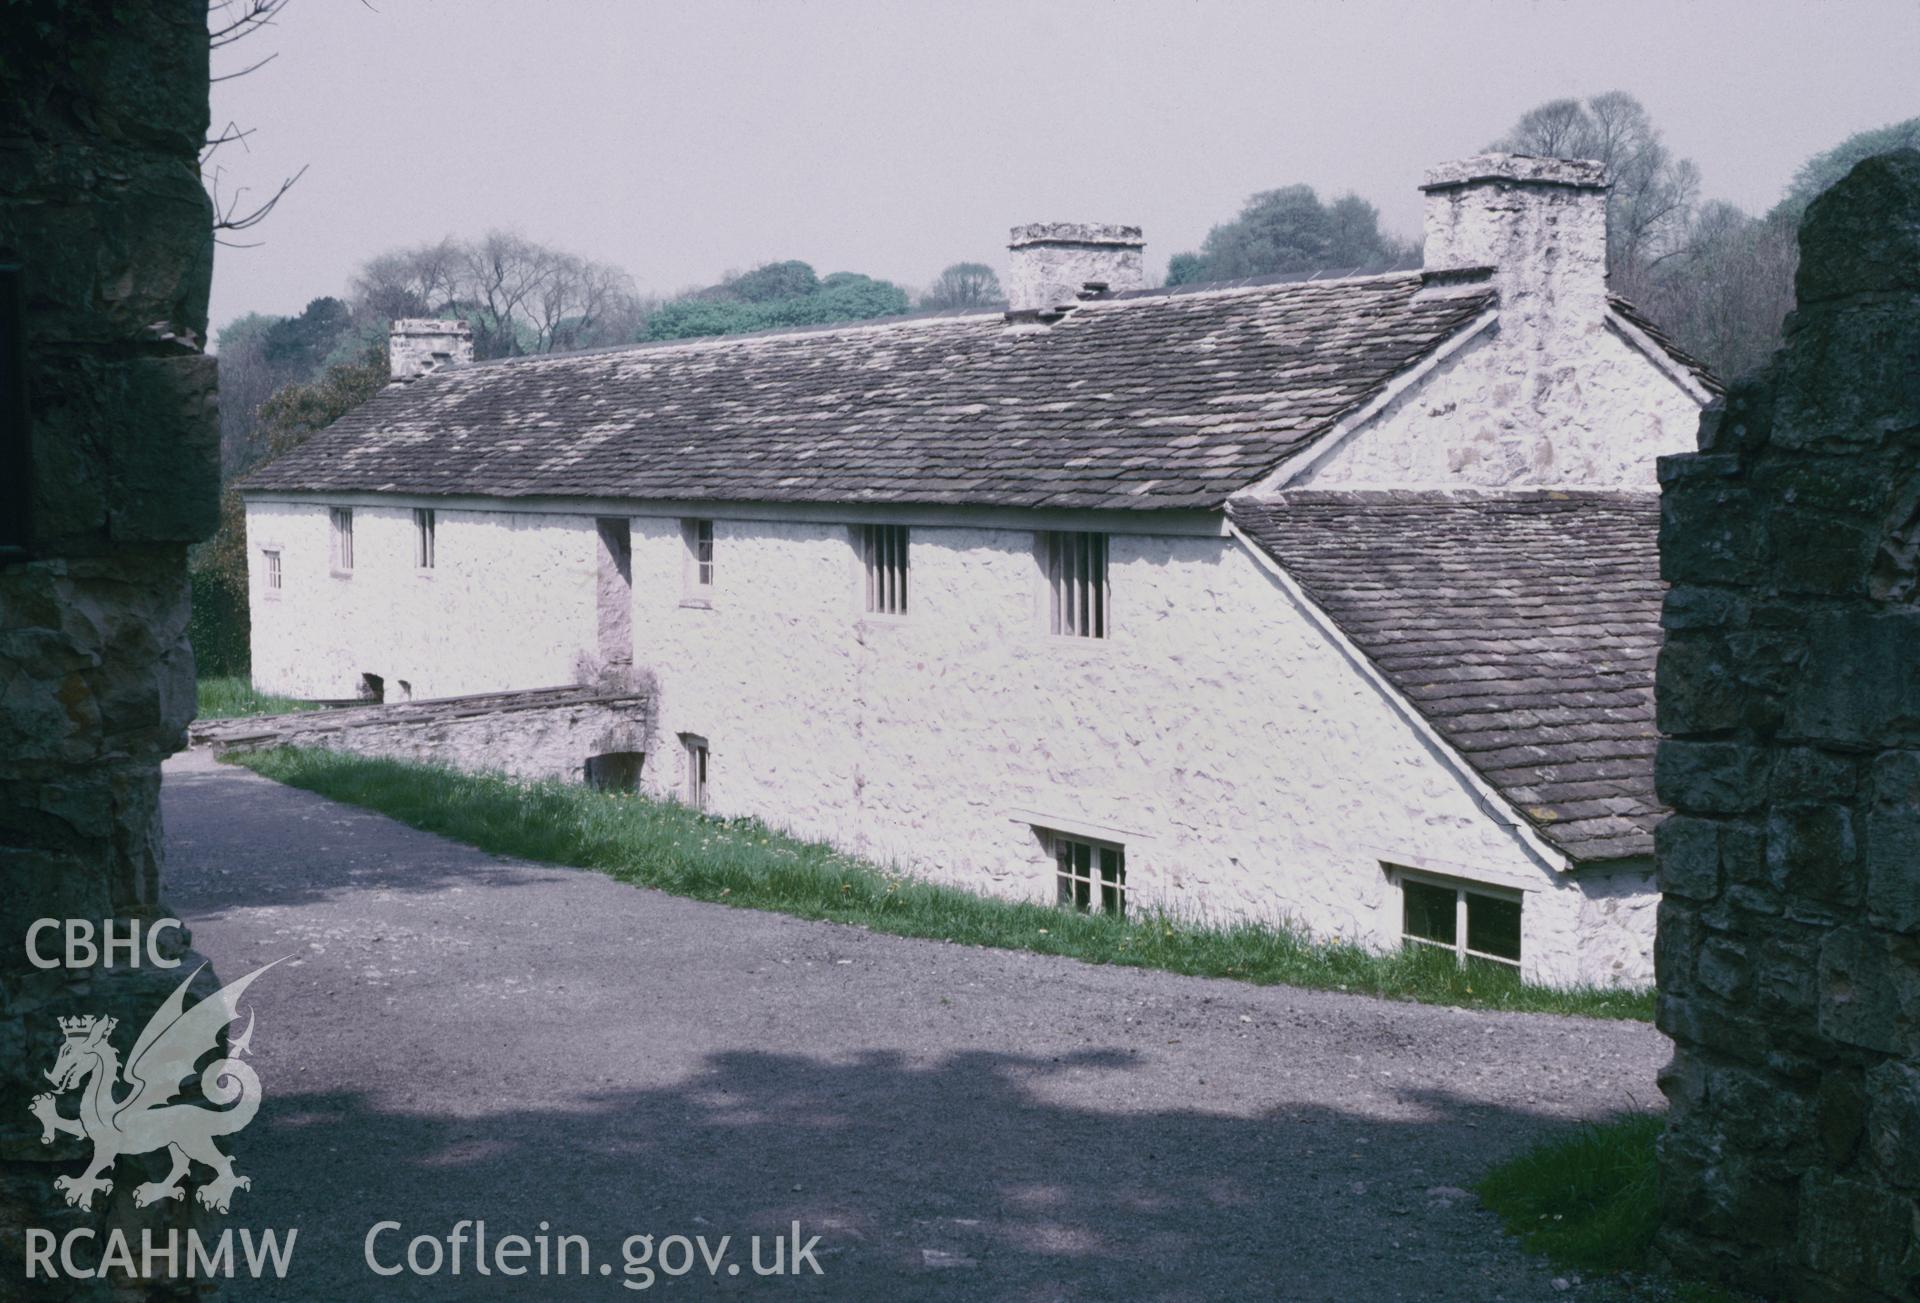 35mm slide of Esgair Moel Woollen Factory, Llanwrtyd, Breconshire, by Dylan Robert.